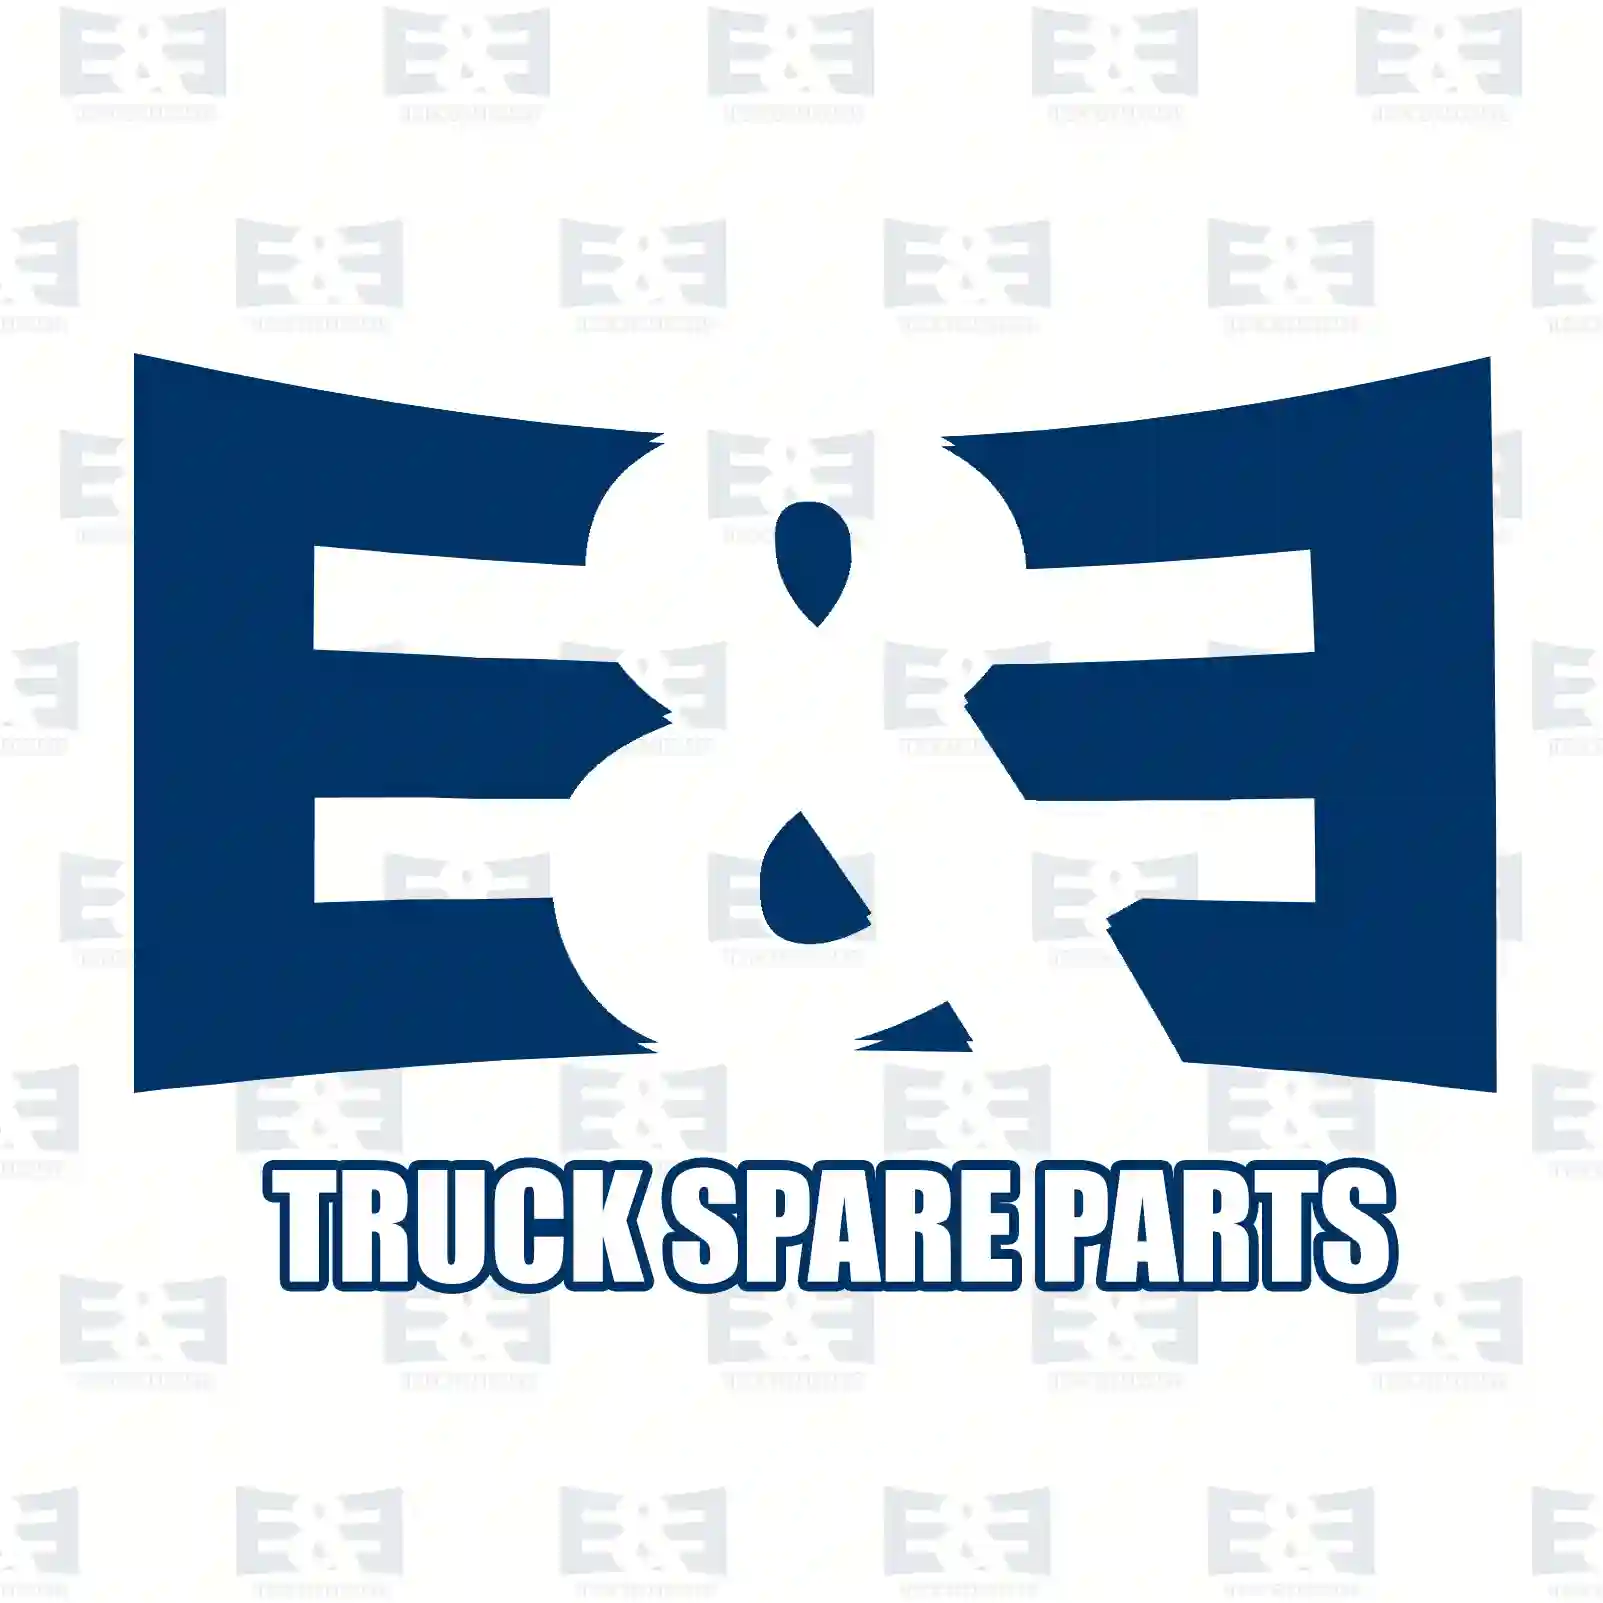 Washer, 2E2285932, 3129902840, 3159905040, 3229904440, ||  2E2285932 E&E Truck Spare Parts | Truck Spare Parts, Auotomotive Spare Parts Washer, 2E2285932, 3129902840, 3159905040, 3229904440, ||  2E2285932 E&E Truck Spare Parts | Truck Spare Parts, Auotomotive Spare Parts